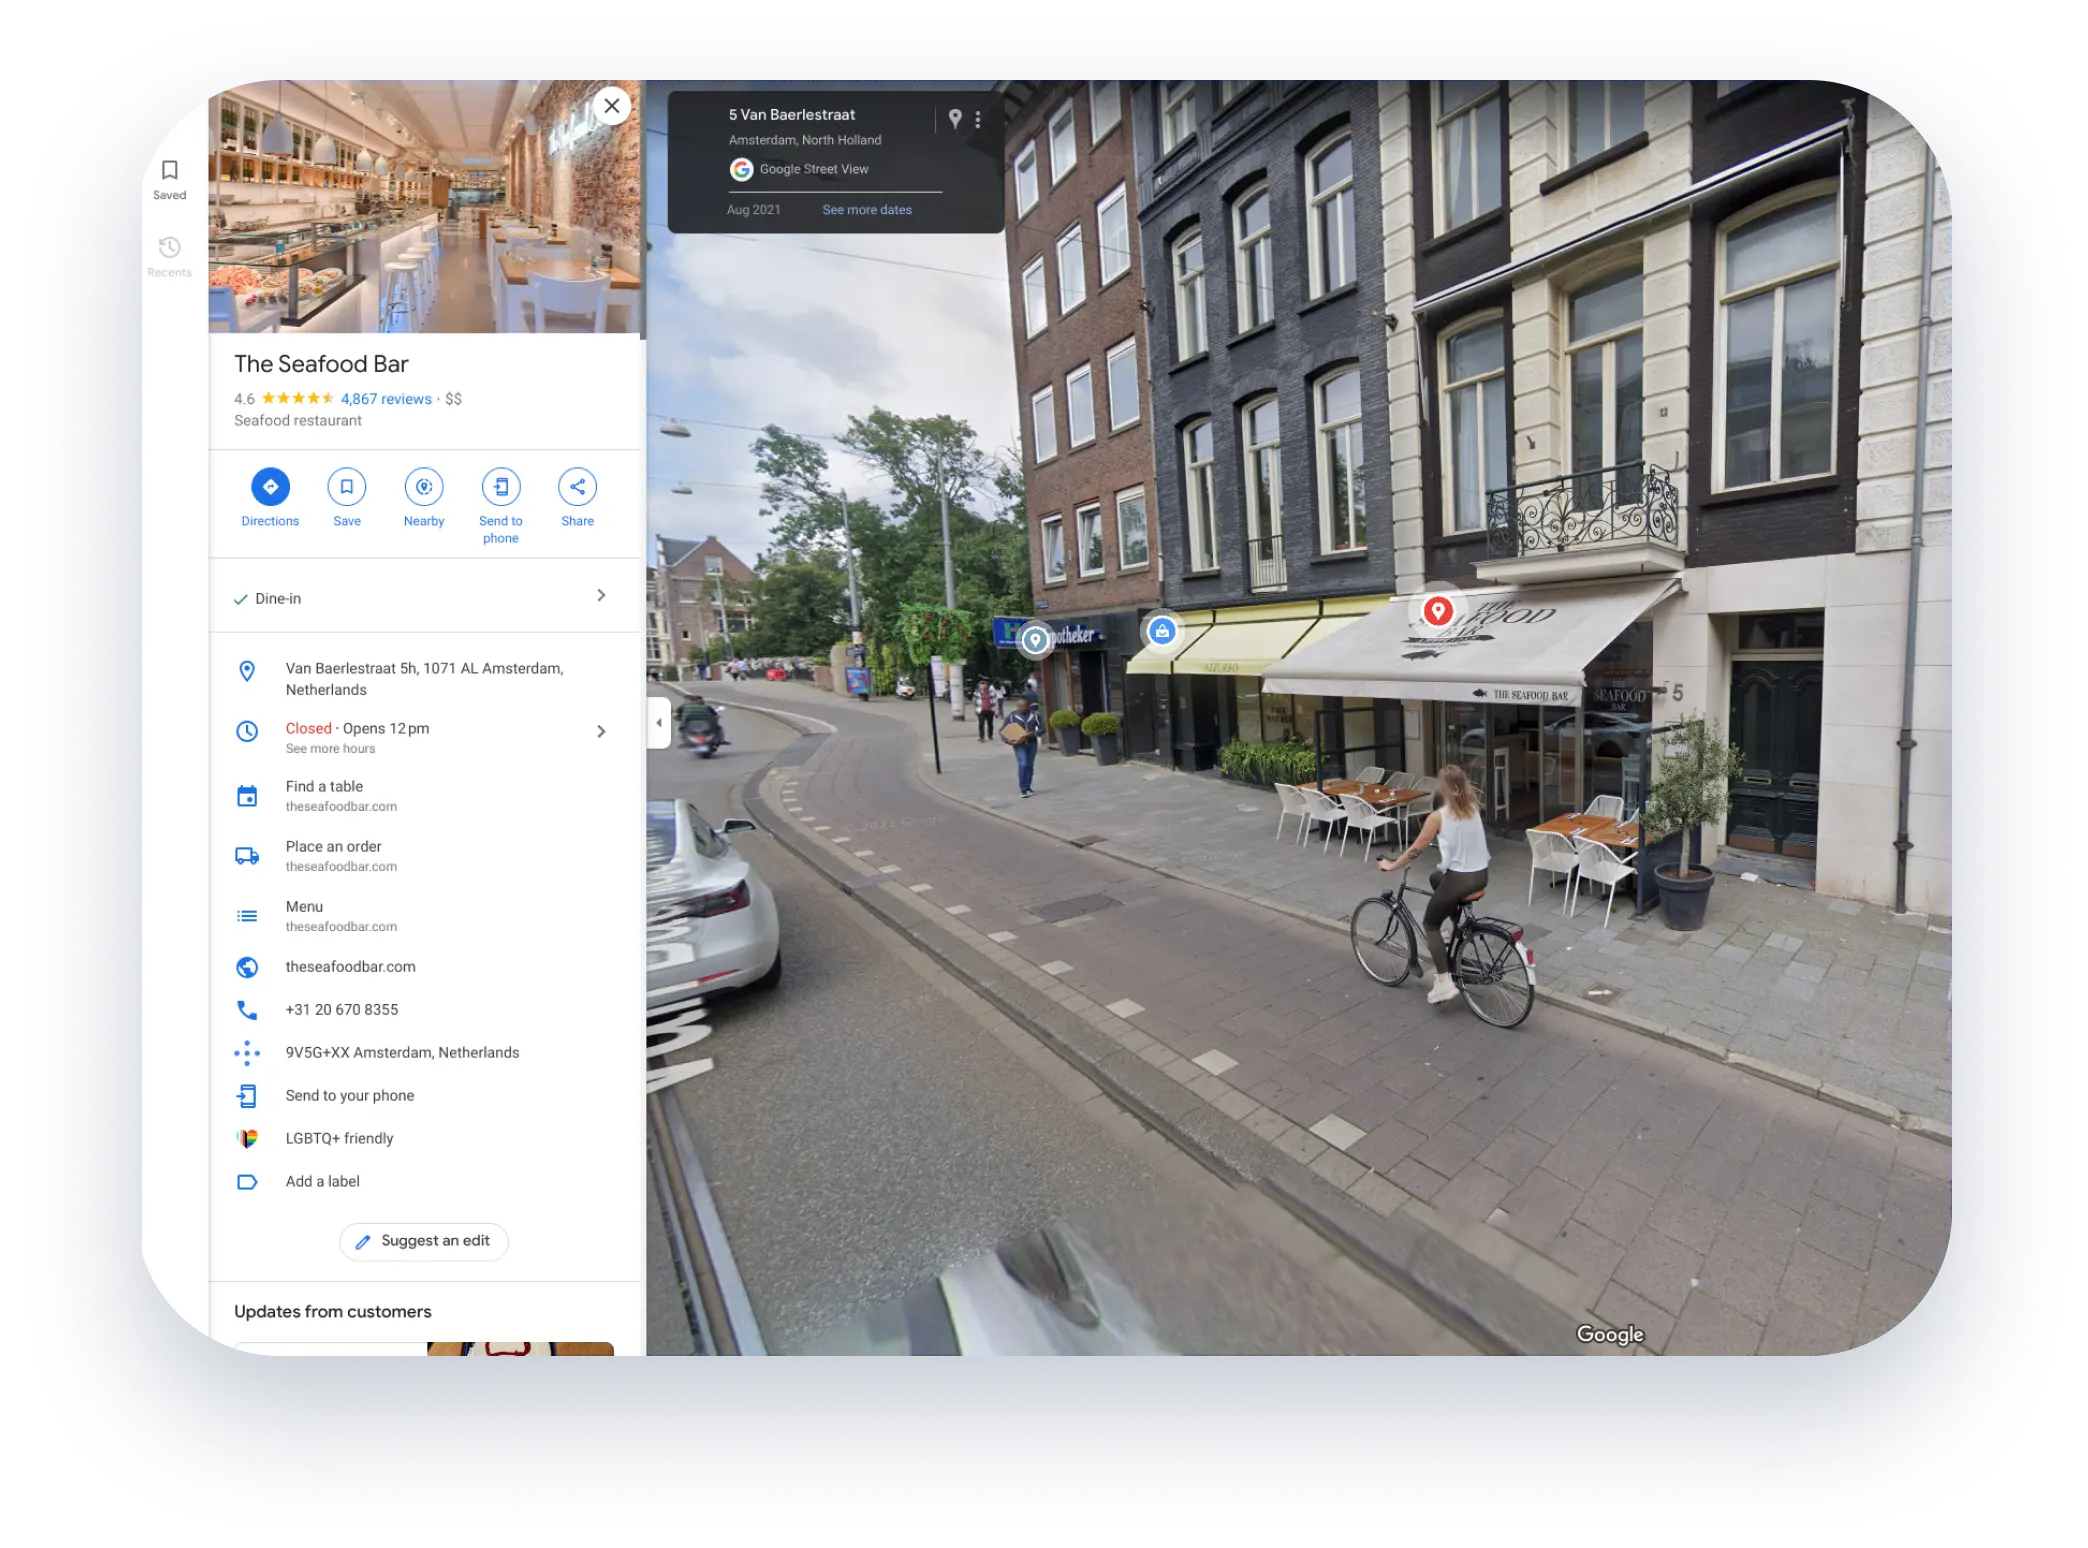 Google Перегляд вулиць: кругова панорама вітрини